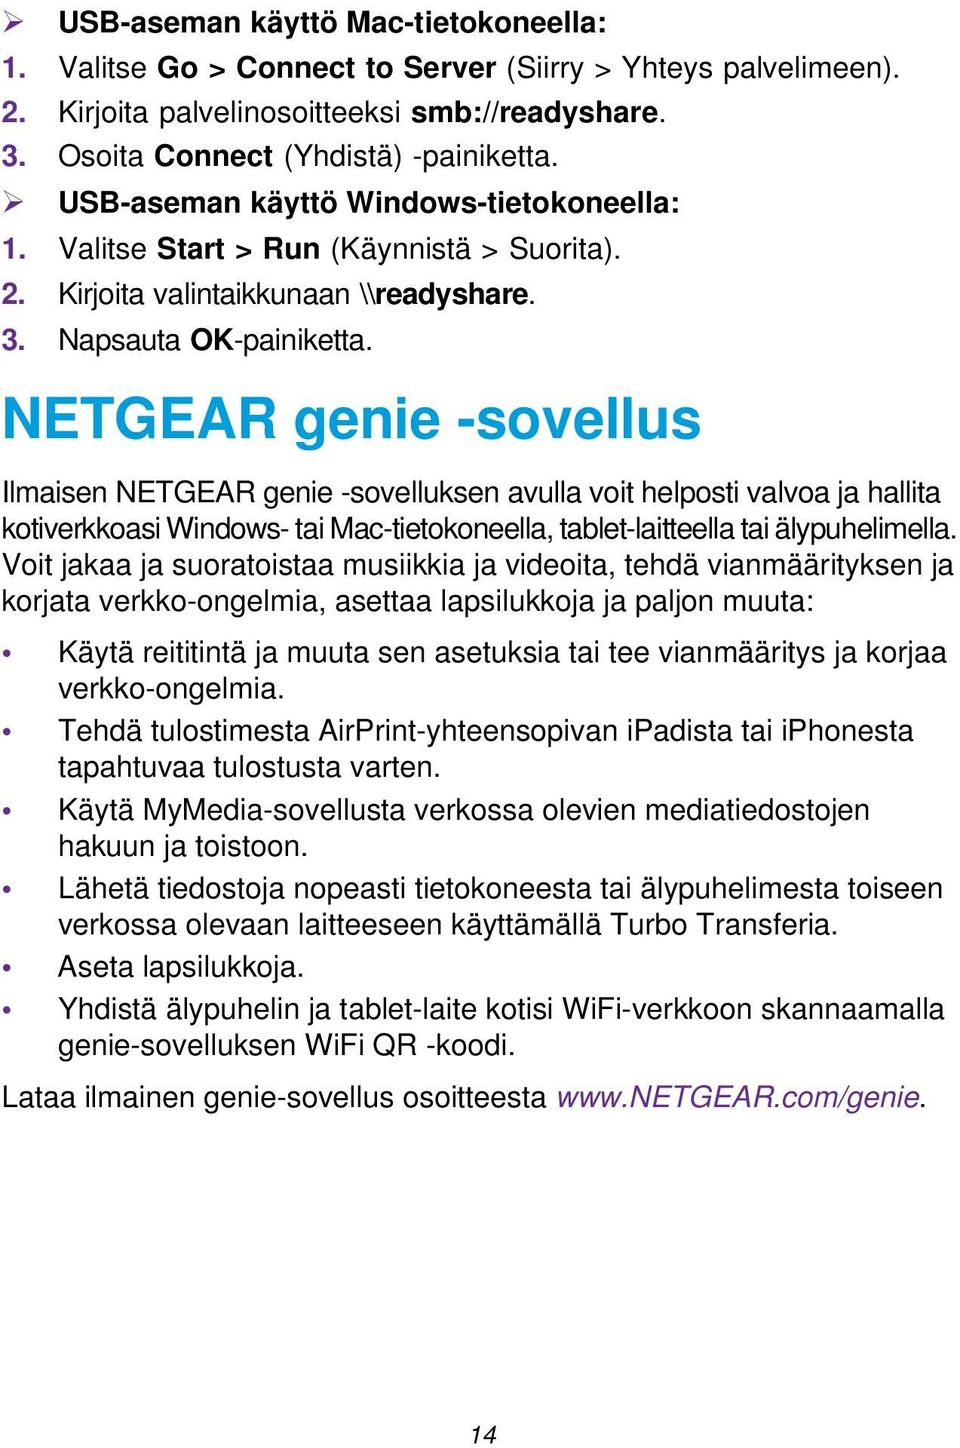 NETGEAR genie -sovellus Ilmaisen NETGEAR genie -sovelluksen avulla voit helposti valvoa ja hallita kotiverkkoasi Windows- tai Mac-tietokoneella, tablet-laitteella tai älypuhelimella.